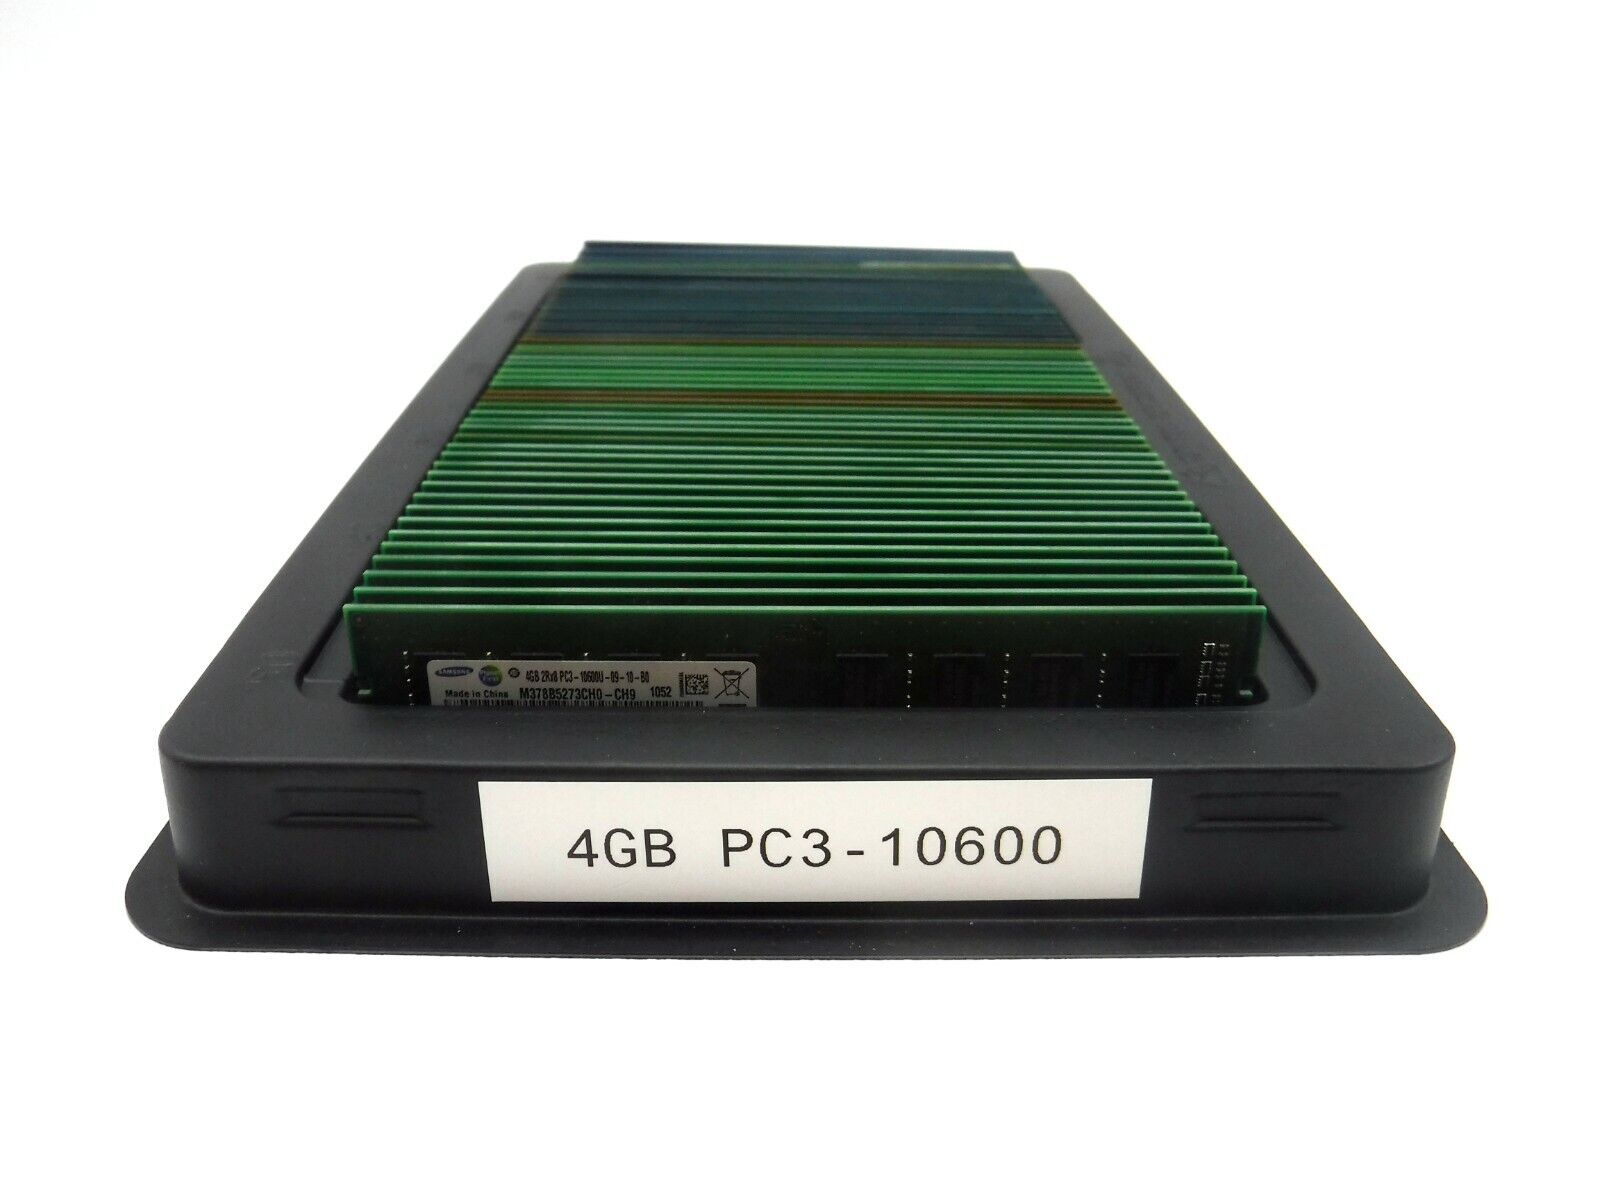 Lot of 50 Mixed 4GB PC3-10600U DIMM Desktop Memory RAM (200 GB Total)